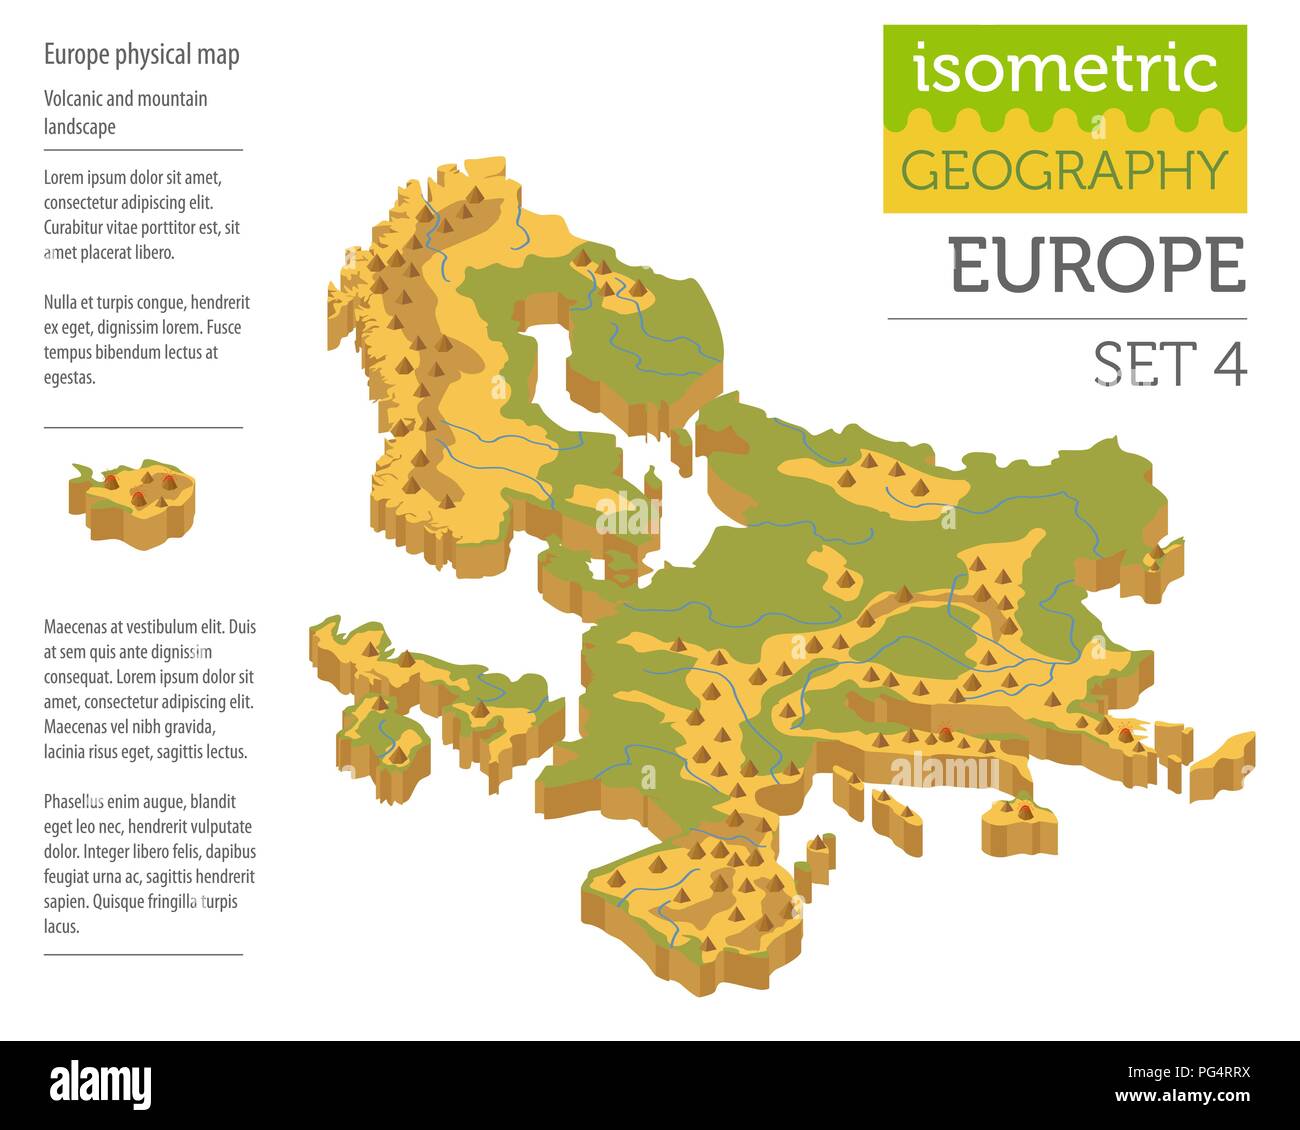 Isometrische 3d-Europa physische Karte Konstruktor Elemente isoliert auf Weiss. Ihre eigene Geographie Infografiken Sammlung aufzubauen. Vector Illustration Stock Vektor